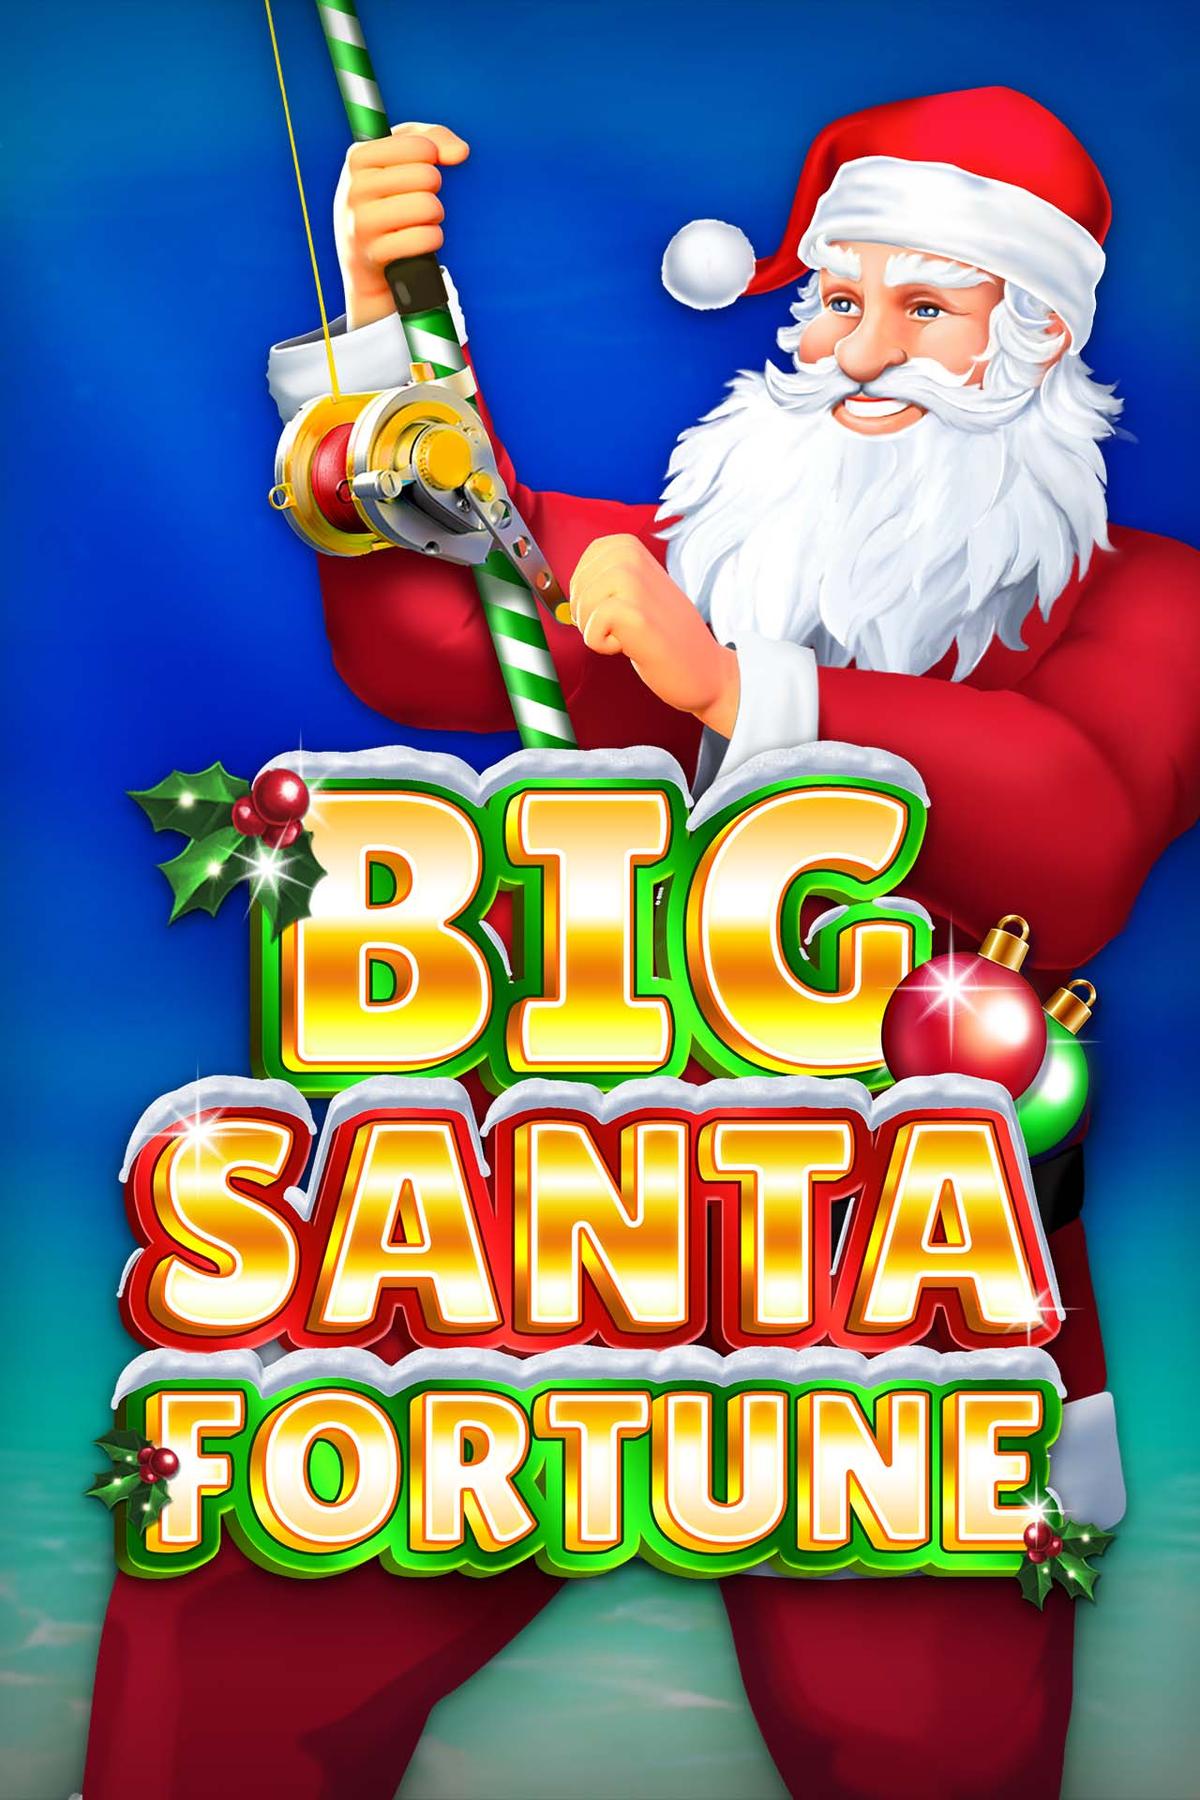 Big Santa Fortune